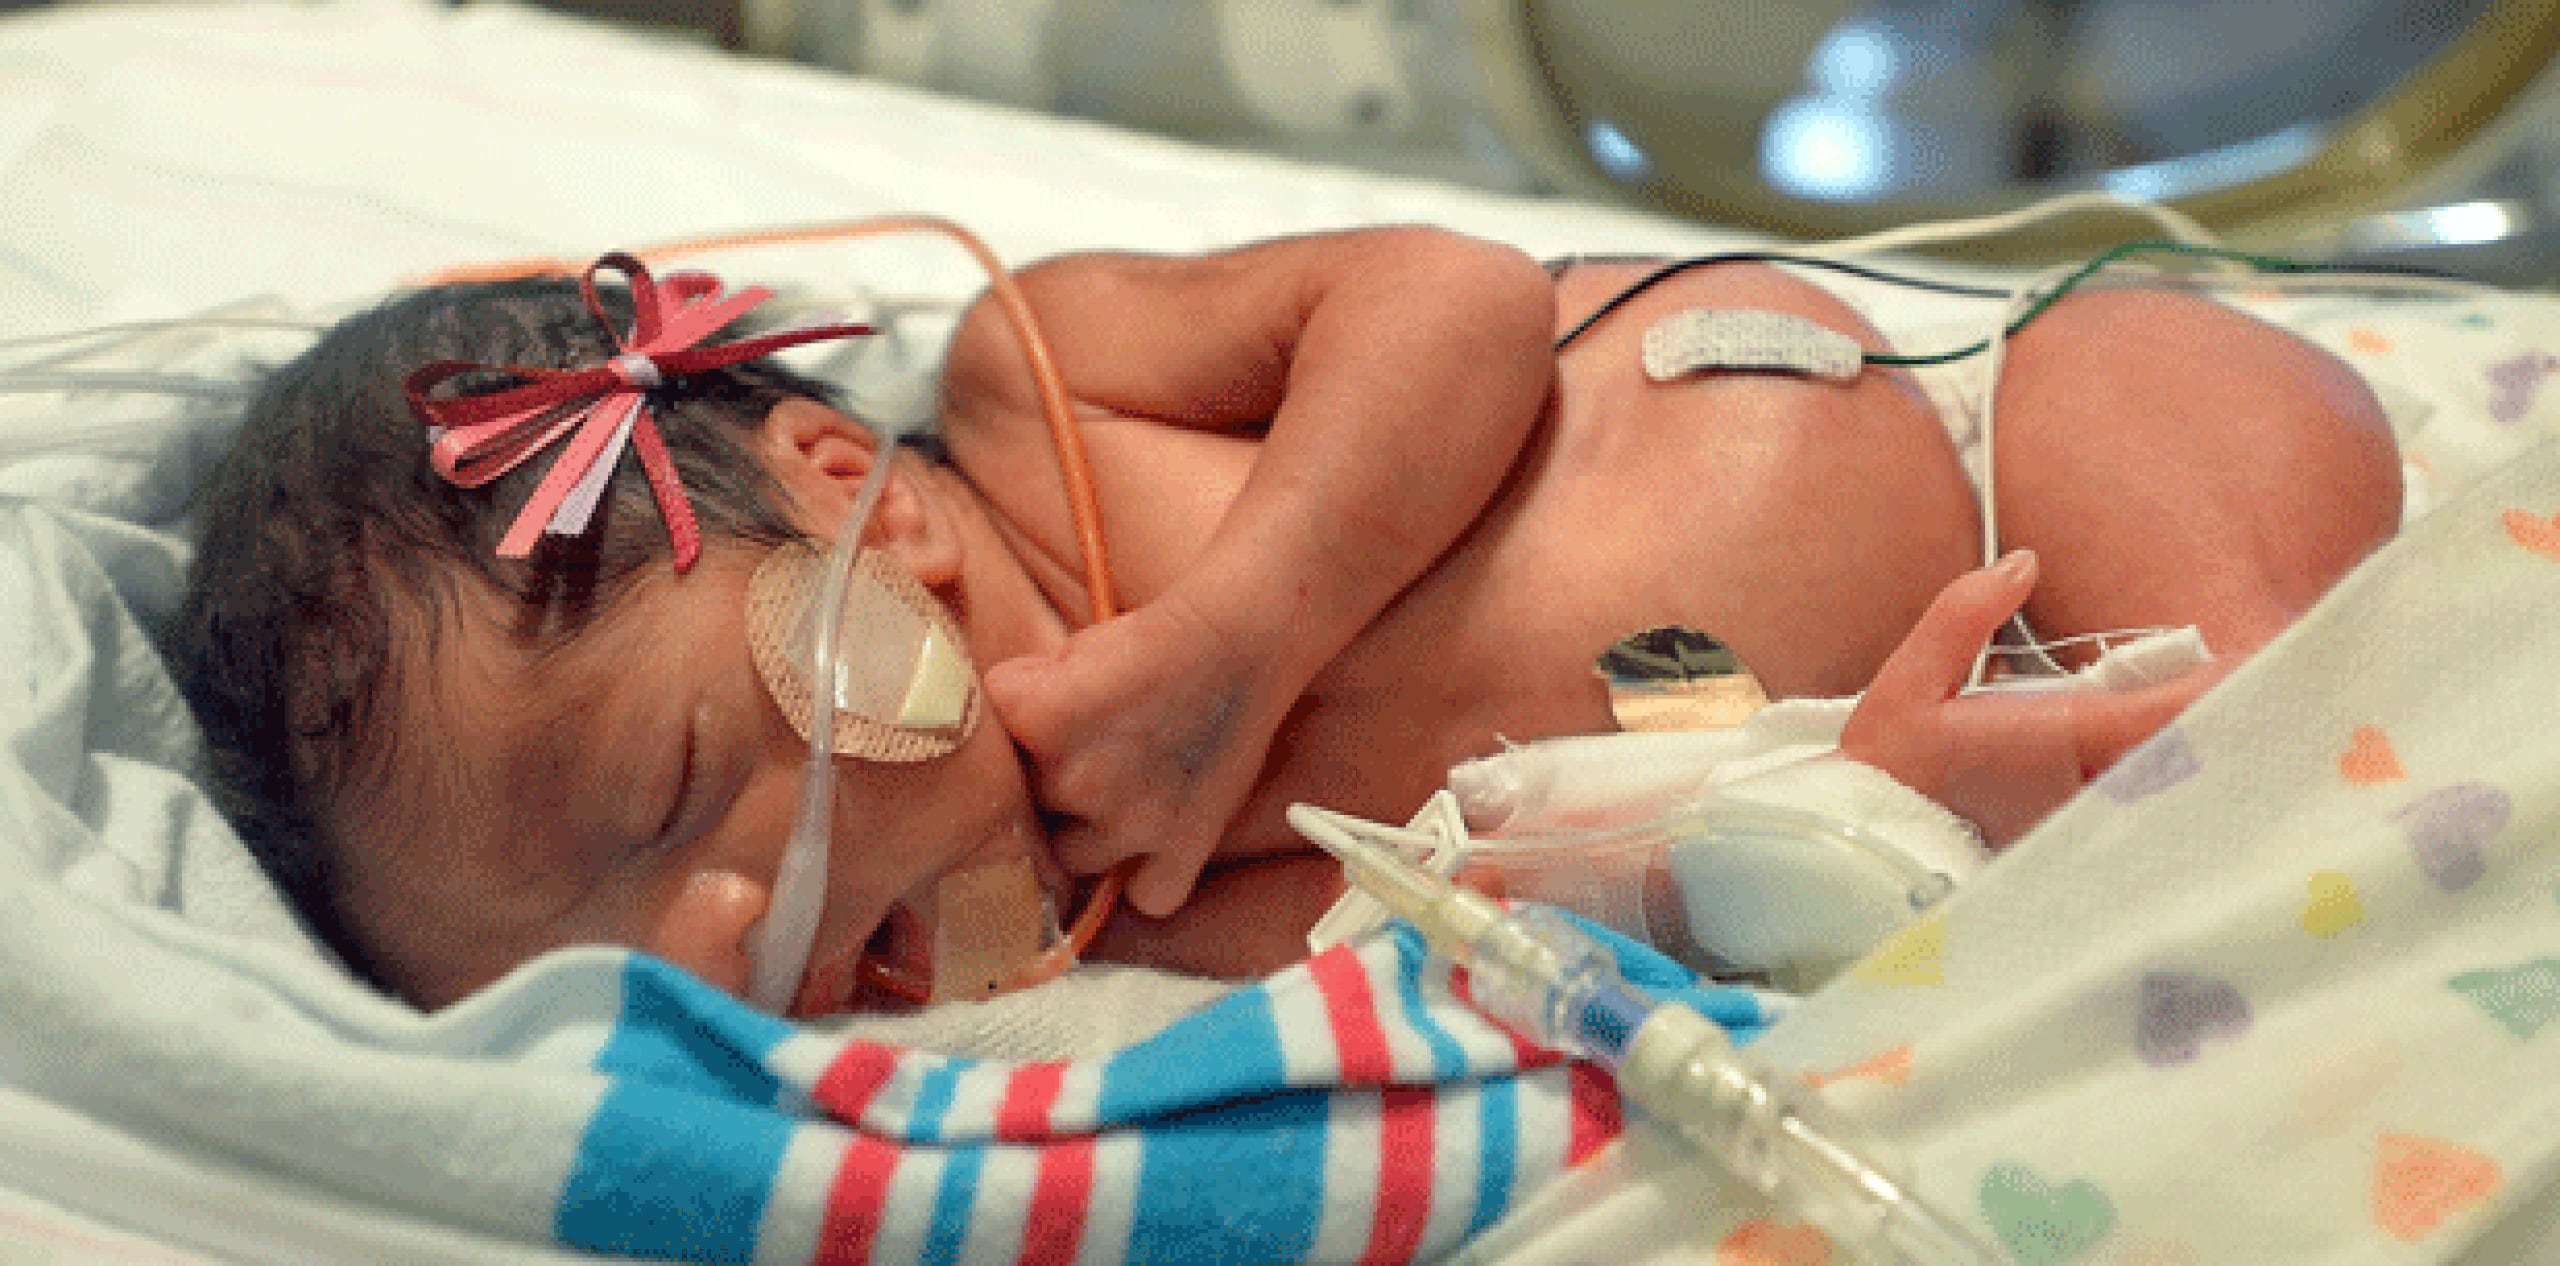 En Estados Unidos se registran 120 partos de trillizos por cada 100,000, nacimientos, aproximadamente. (Silvia Flores/The Fresno Bee via AP)